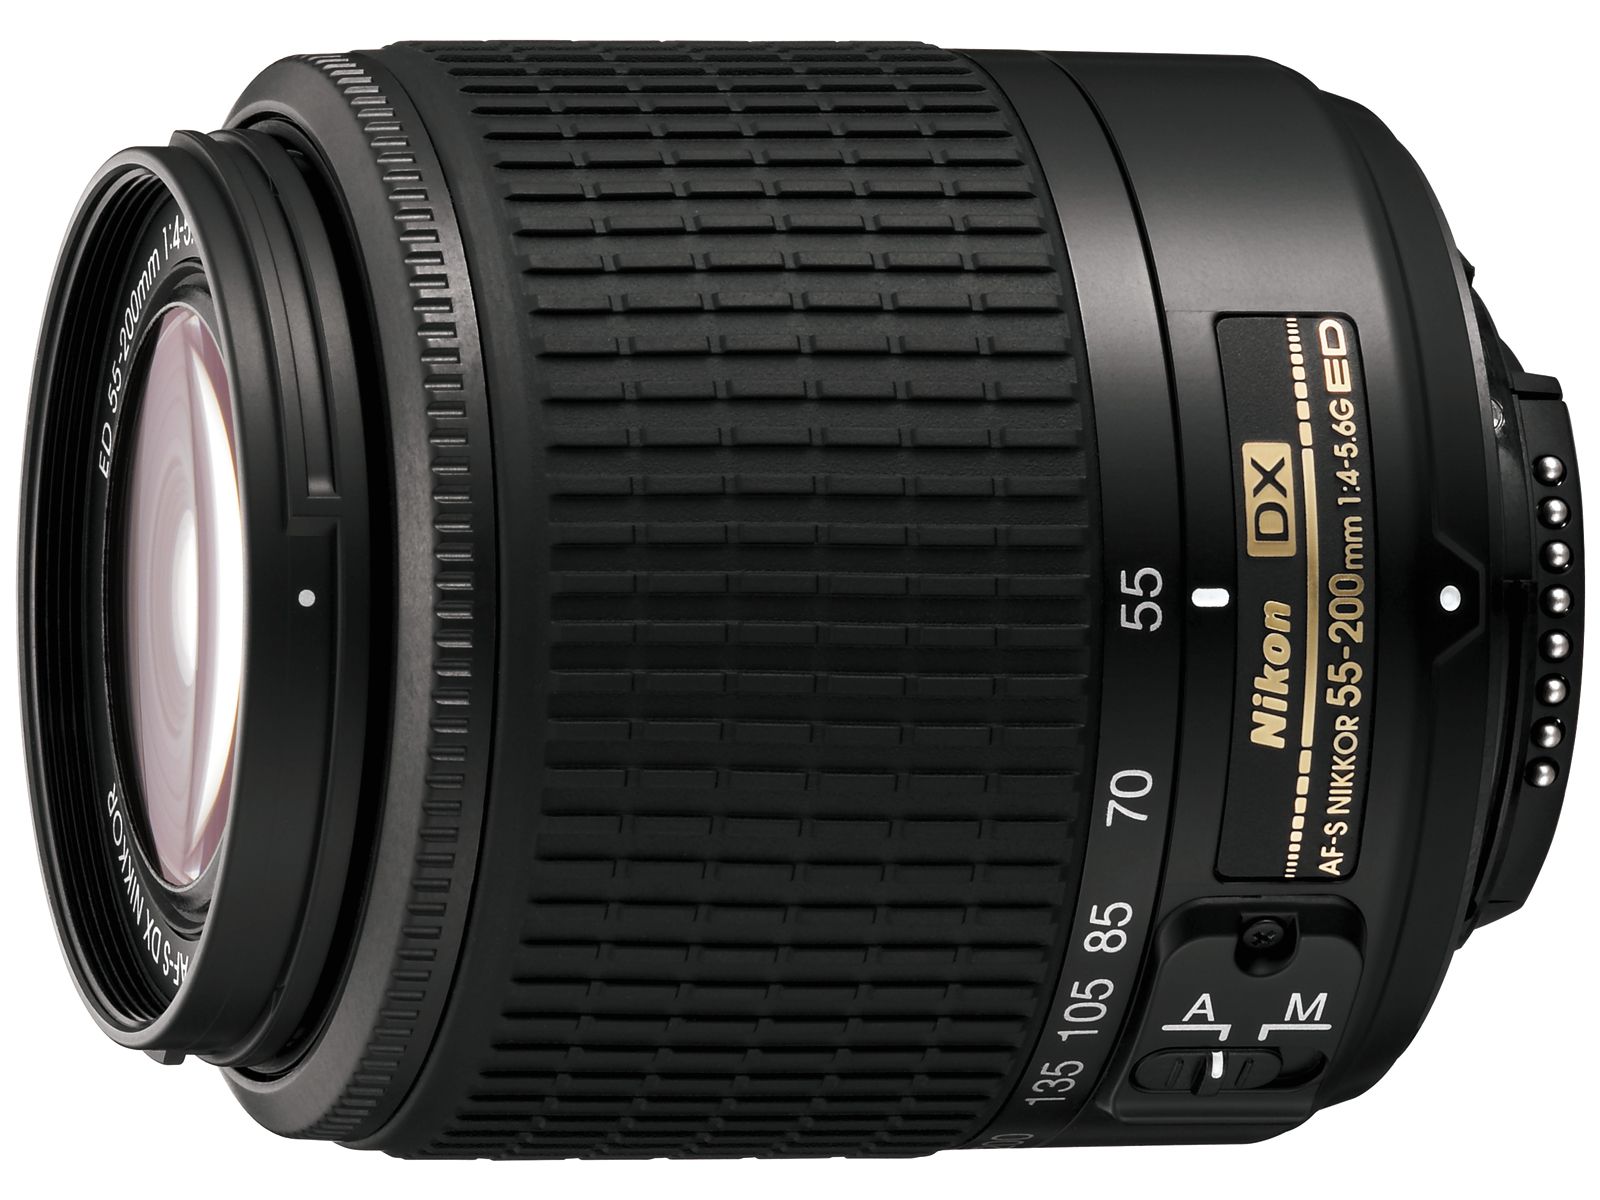 Nikon 18-55mm f/3.5-5.6g af-s VR DX. Nikon DX af s Nikkor 18 55mm. Af s nikkor купить